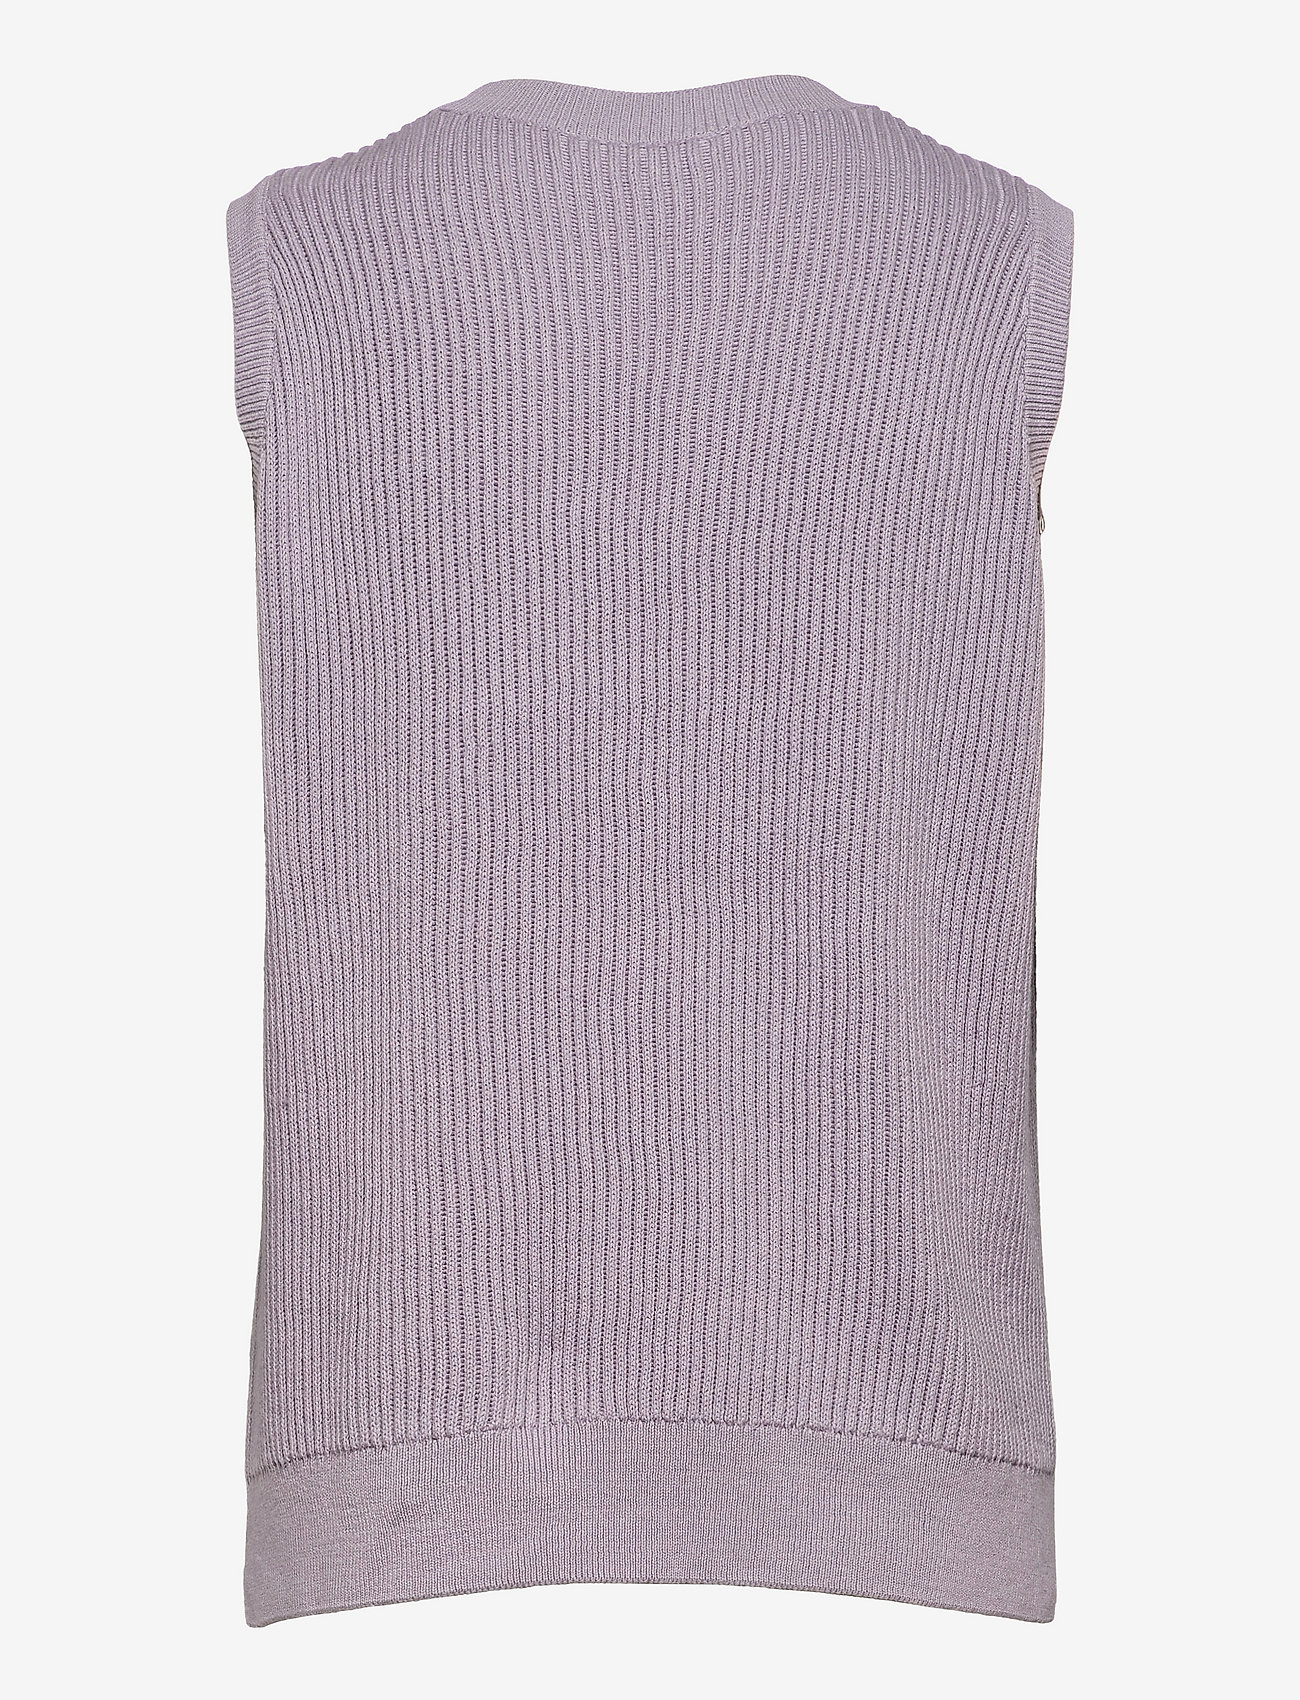 Modström - Luca vest - knitted vests - soft lavender - 1